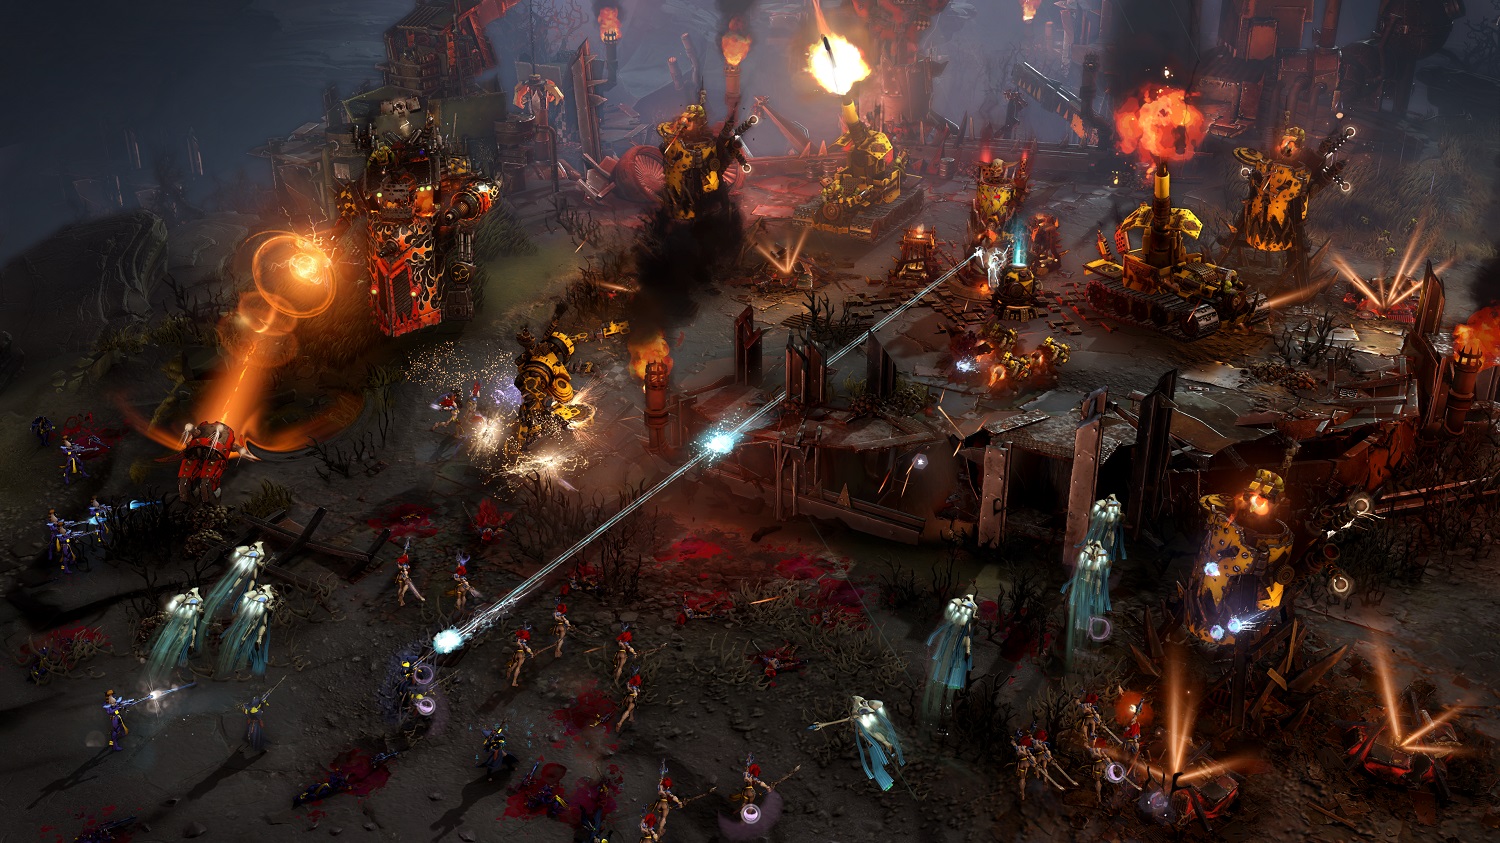 ‘Warhammer 40,000: Darktide’ release date, details: Playable characters, enemies, pre-launch beta